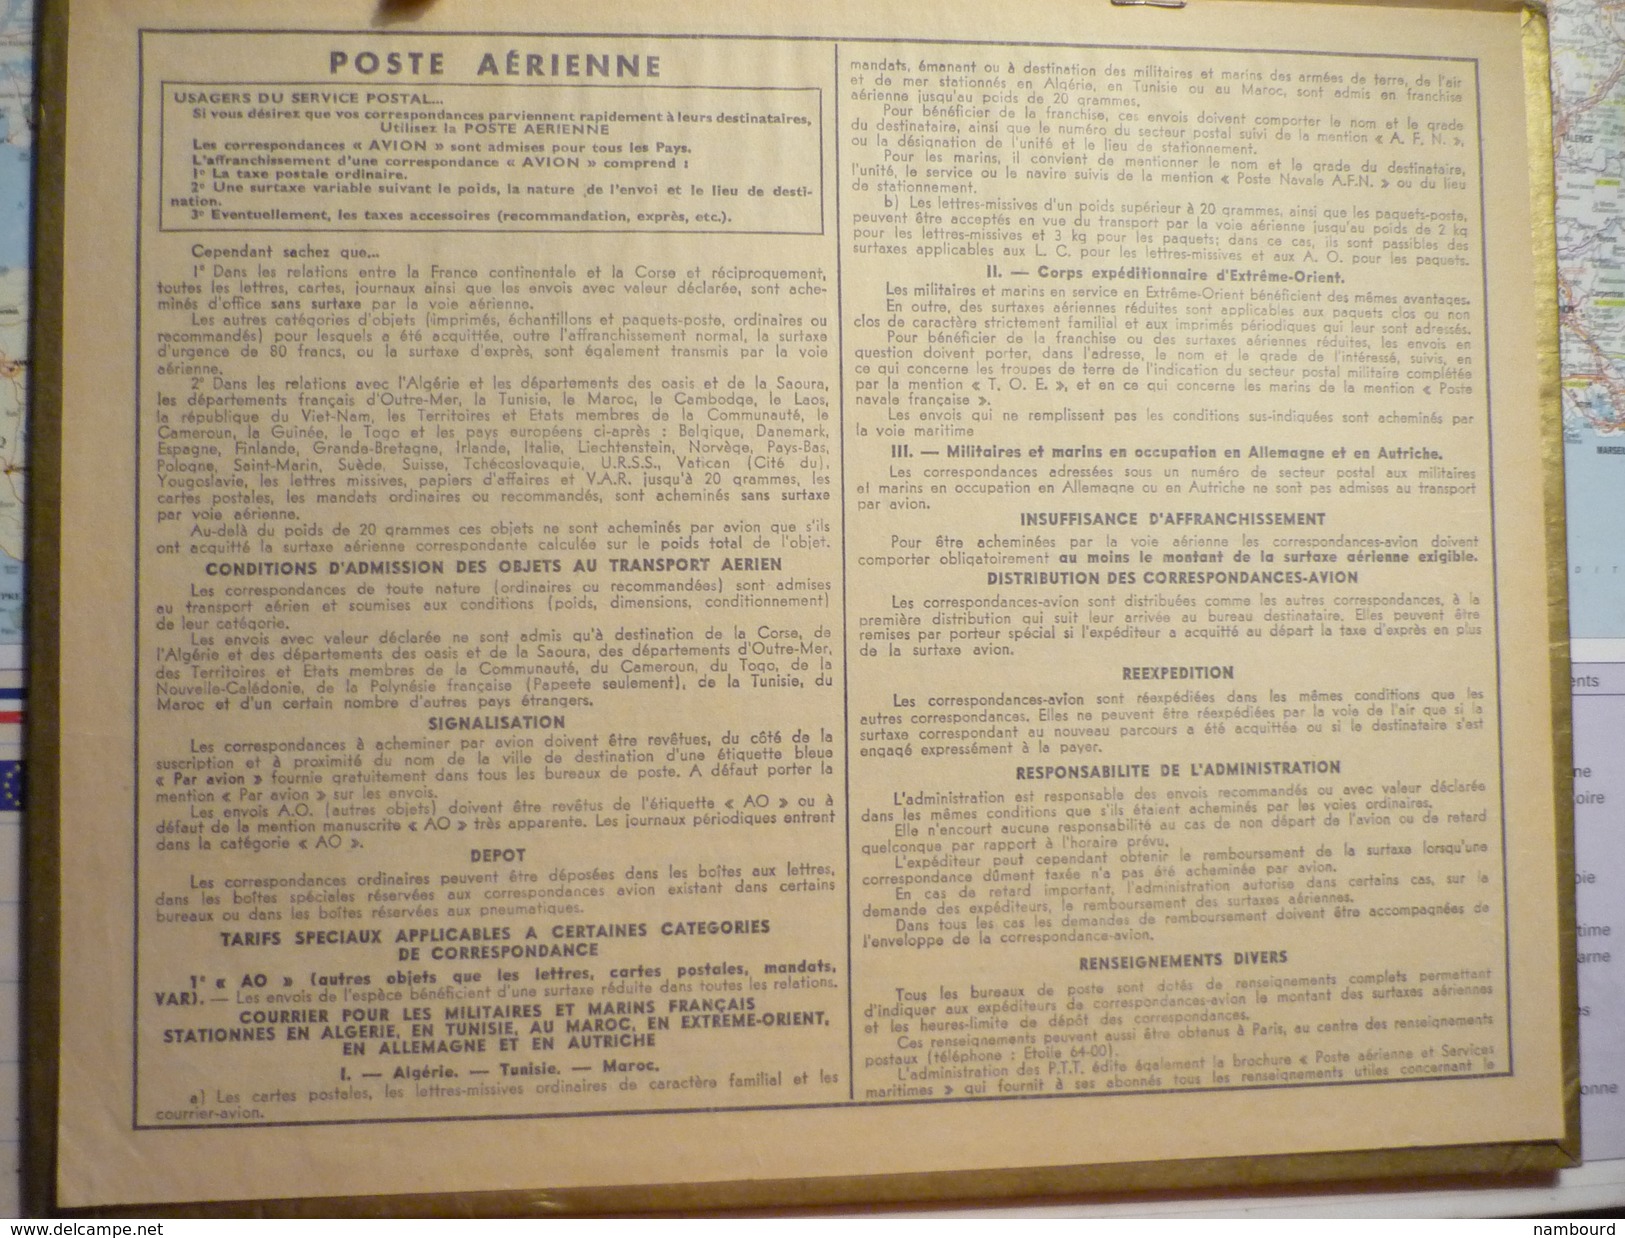 Almanach des Postes 1960 Alerte / département de la Somme